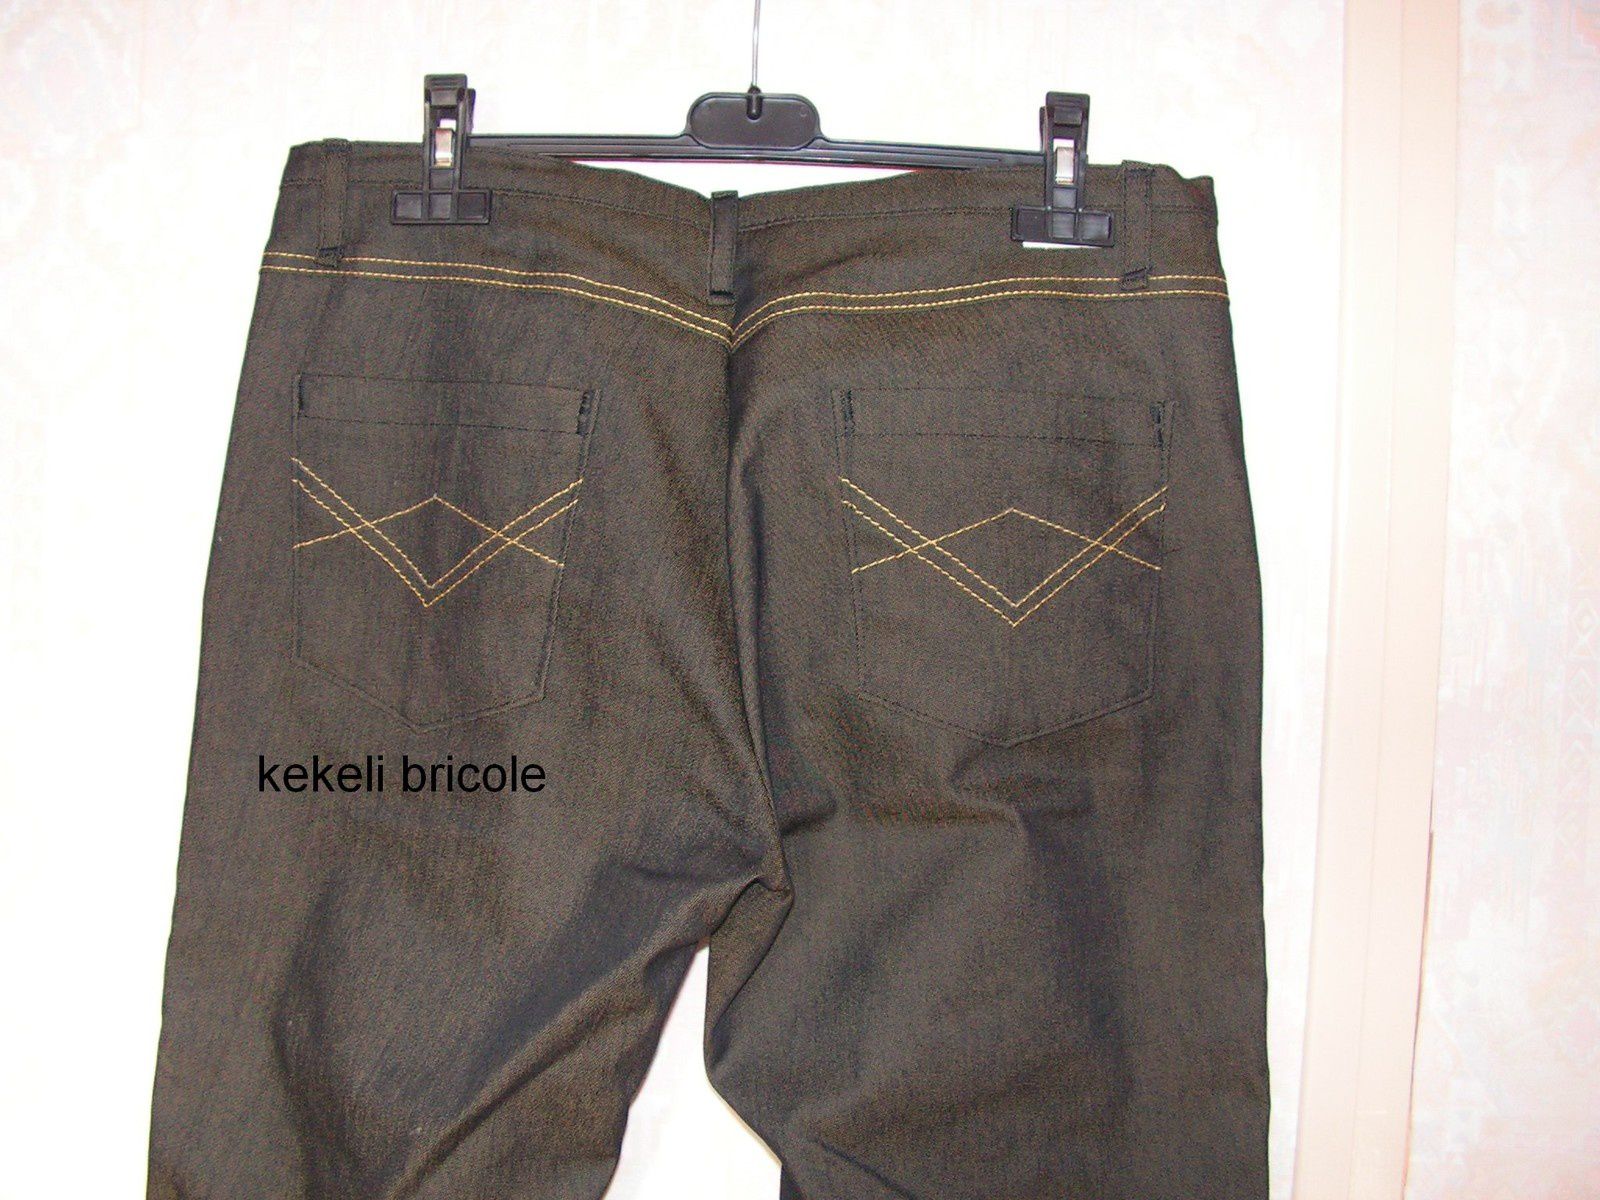 Coudre la poche arrière d'un jean - kekeli bricole